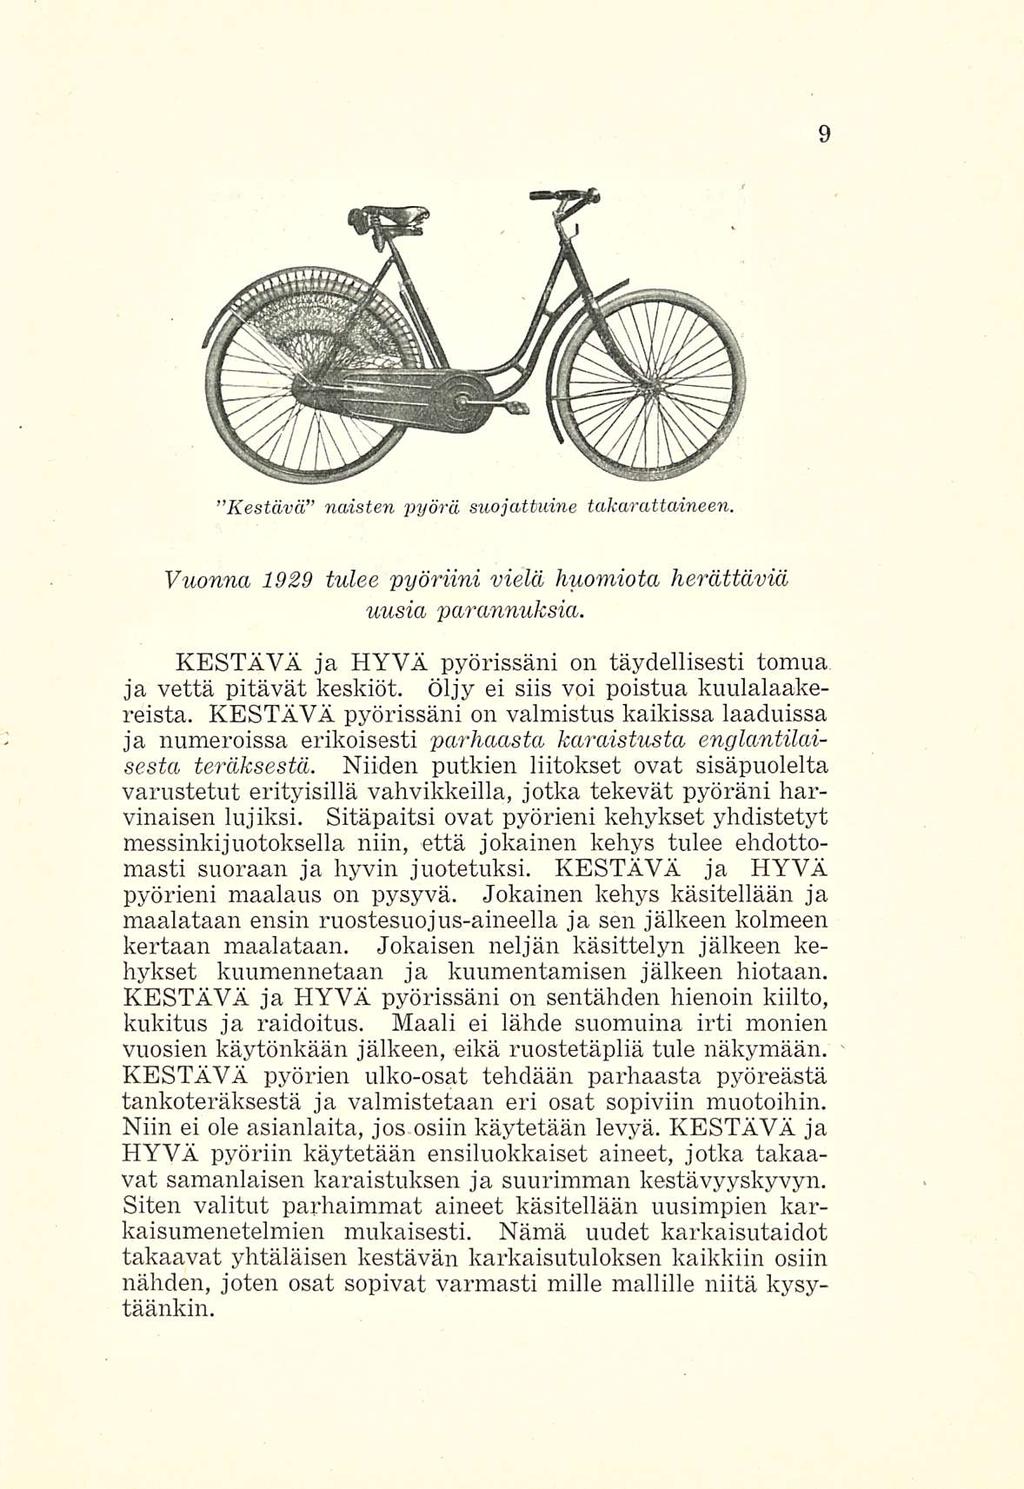 Kestävä naisten pyörä suojattuine takarattaineen. Vuonna 1929 tulee 'pyöriini vielä huomiota herättäviä uusia parannuksia.